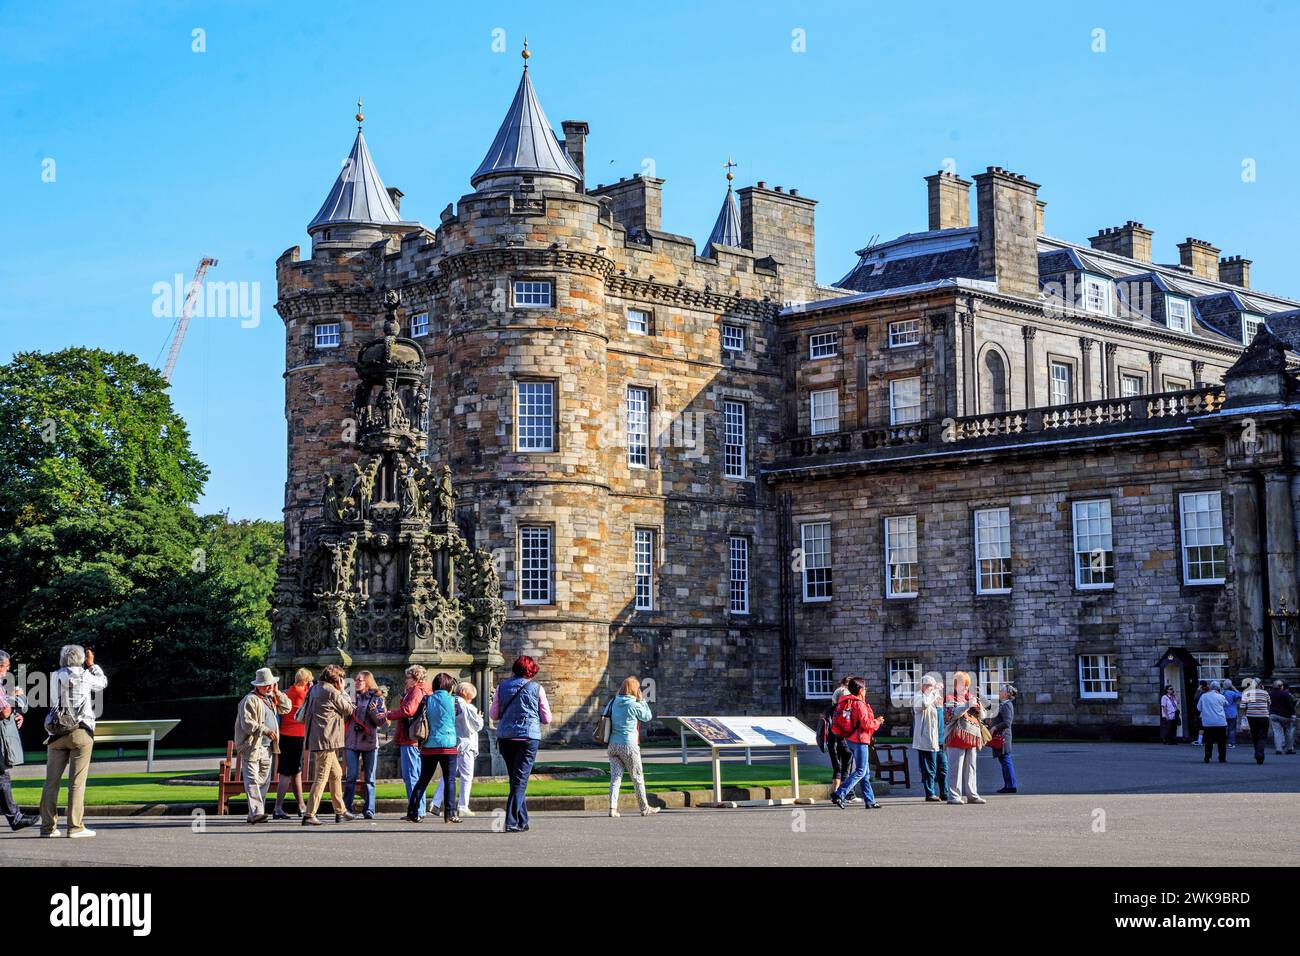 EDIMBURGO, GRAN BRETAGNA - 10 SETTEMBRE 2014: Questo è l'Holyrood Palace, l'antica residenza dei re scozzesi. Foto Stock